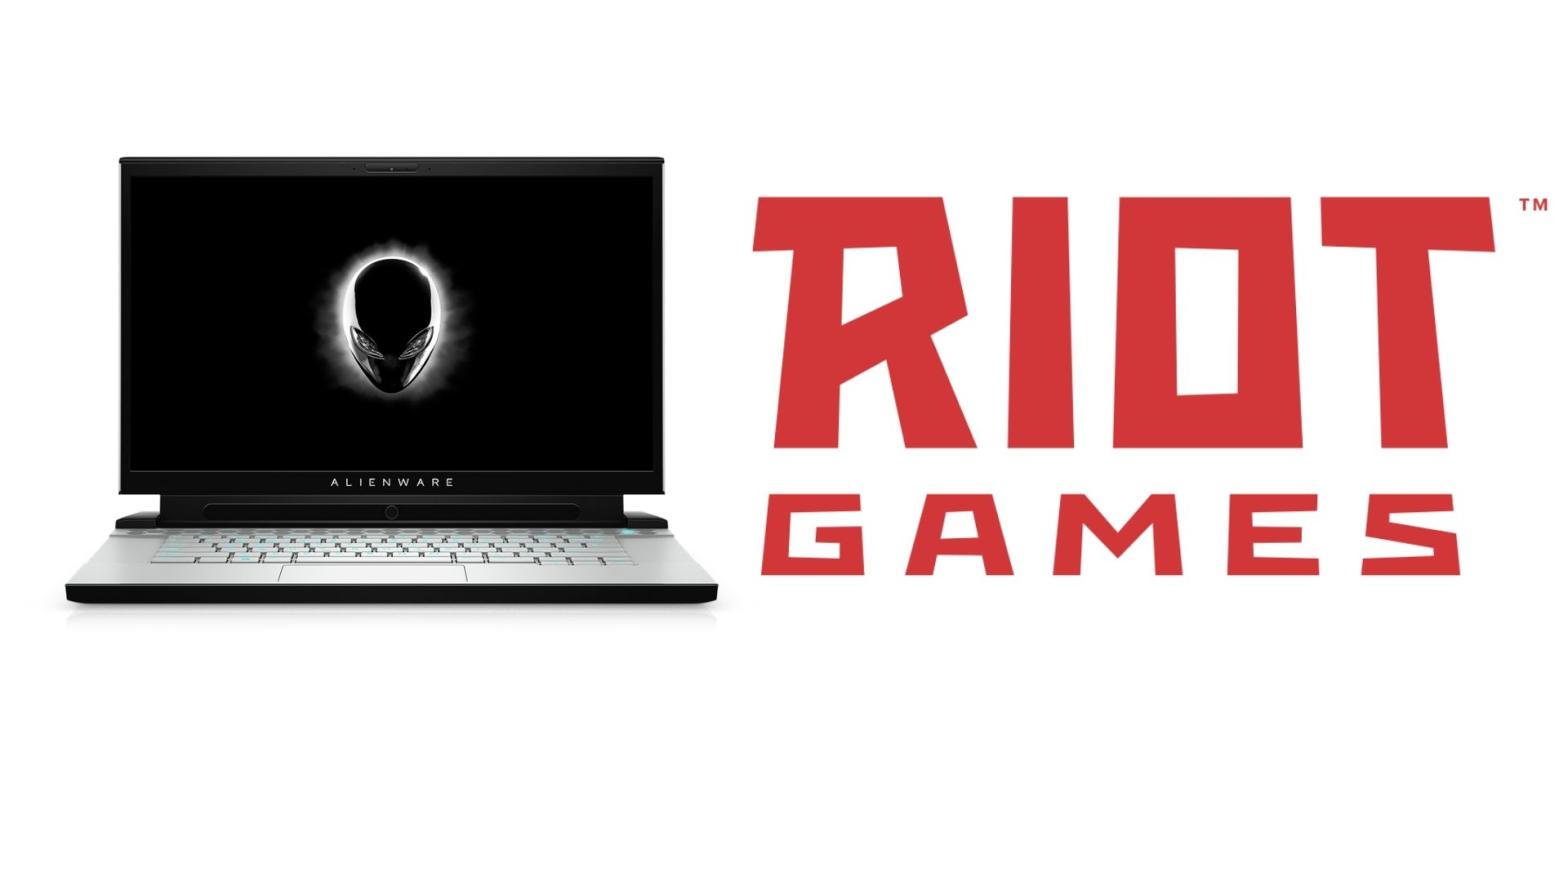 Image: Dell / Riot Games / Kotaku